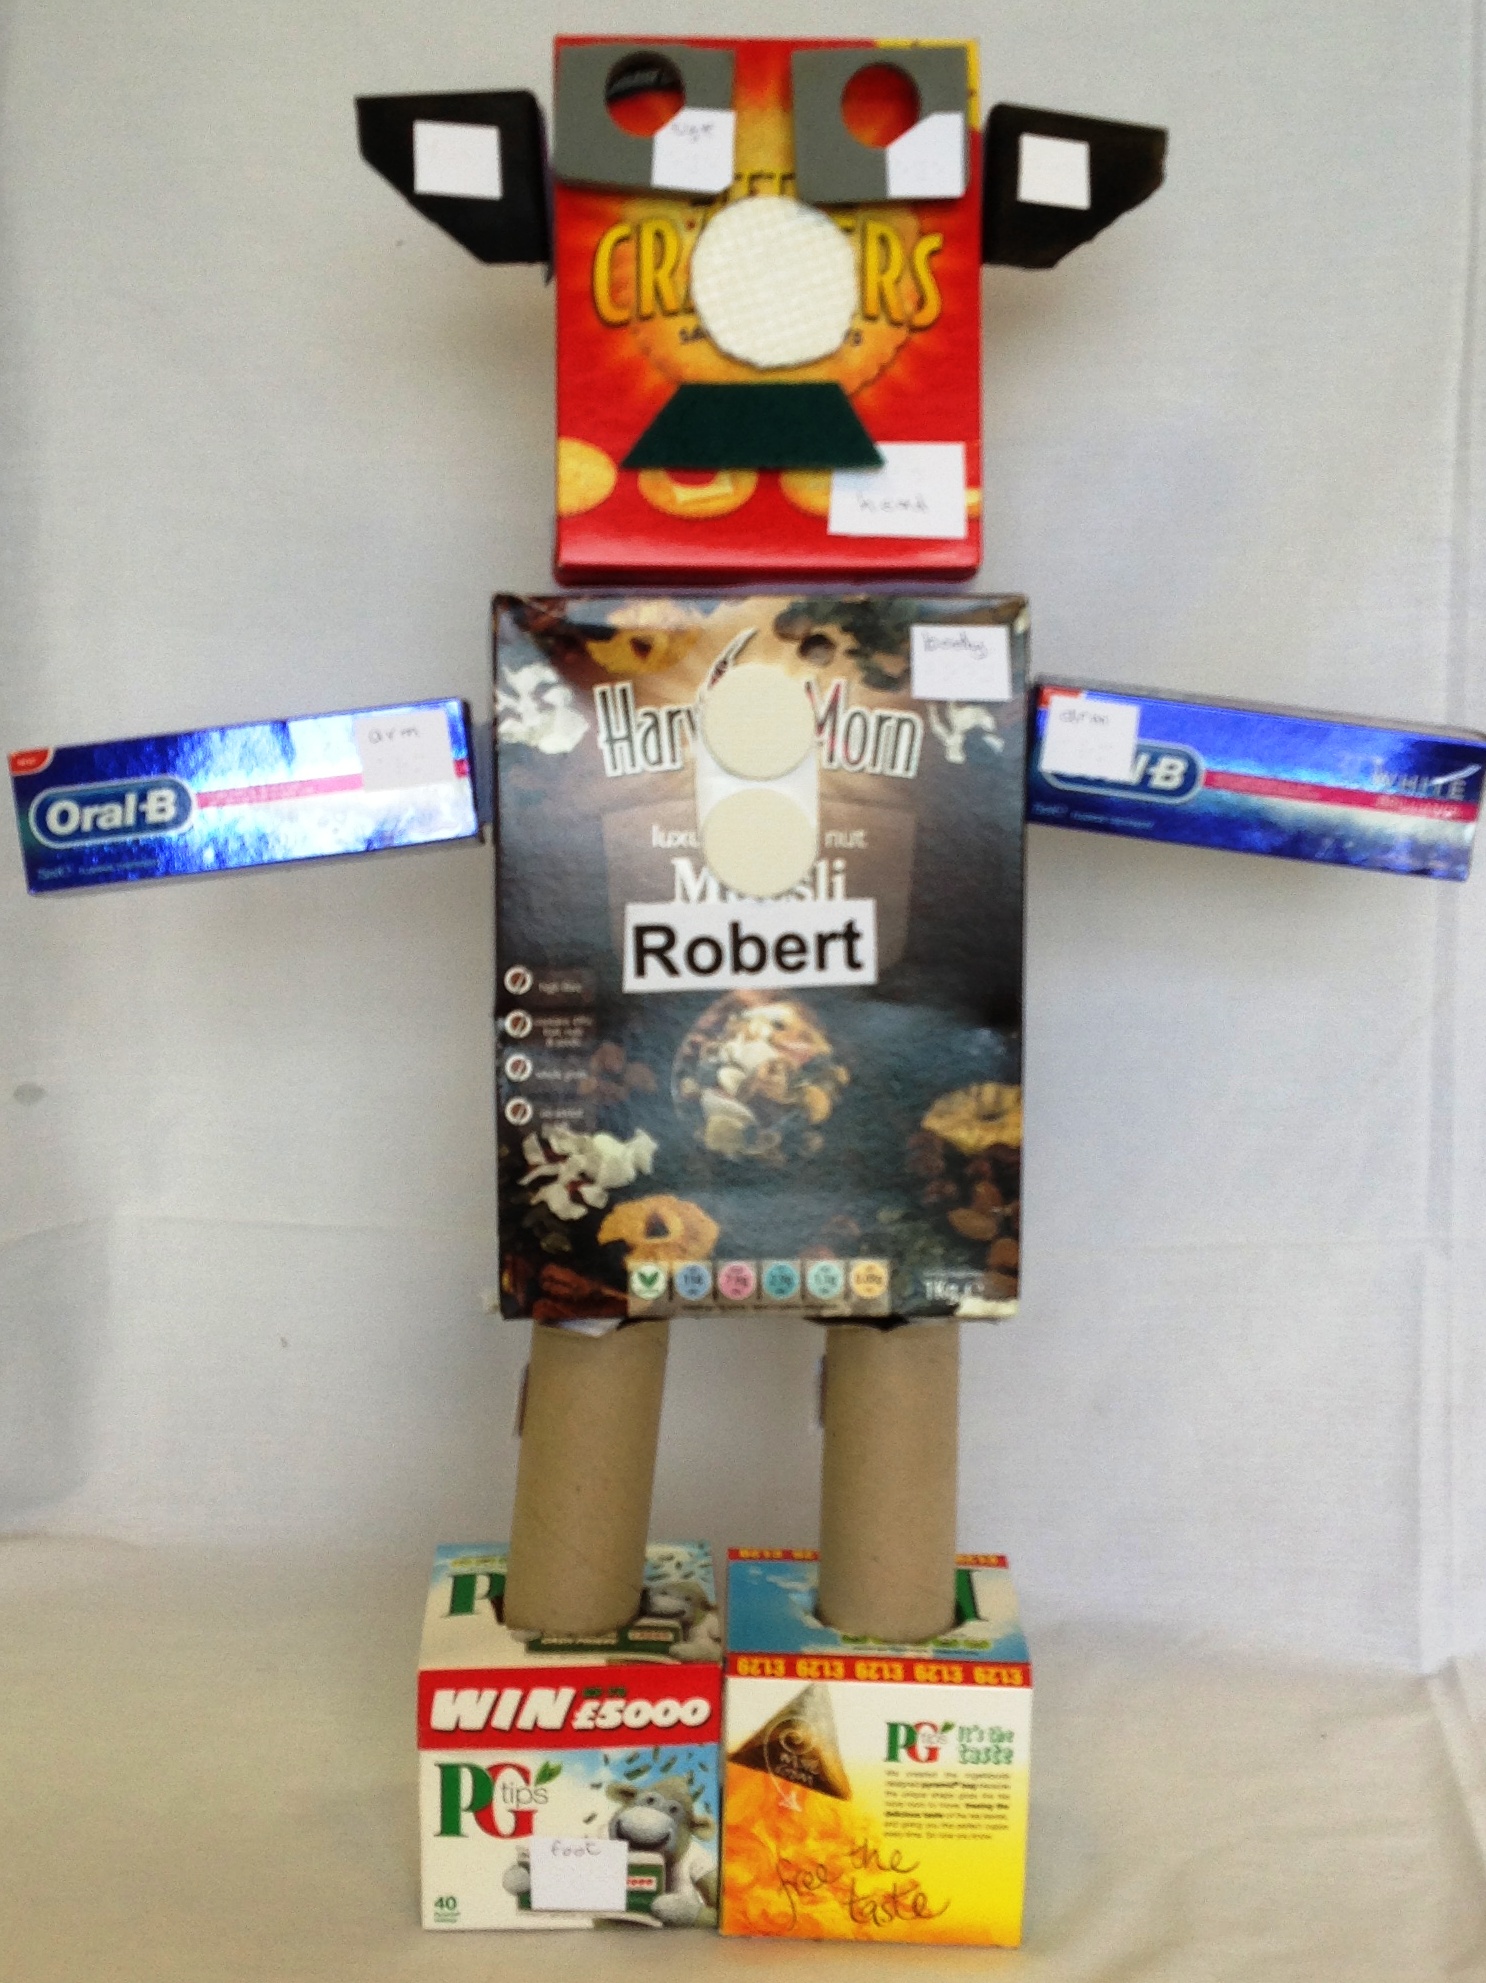 Robert the Robot